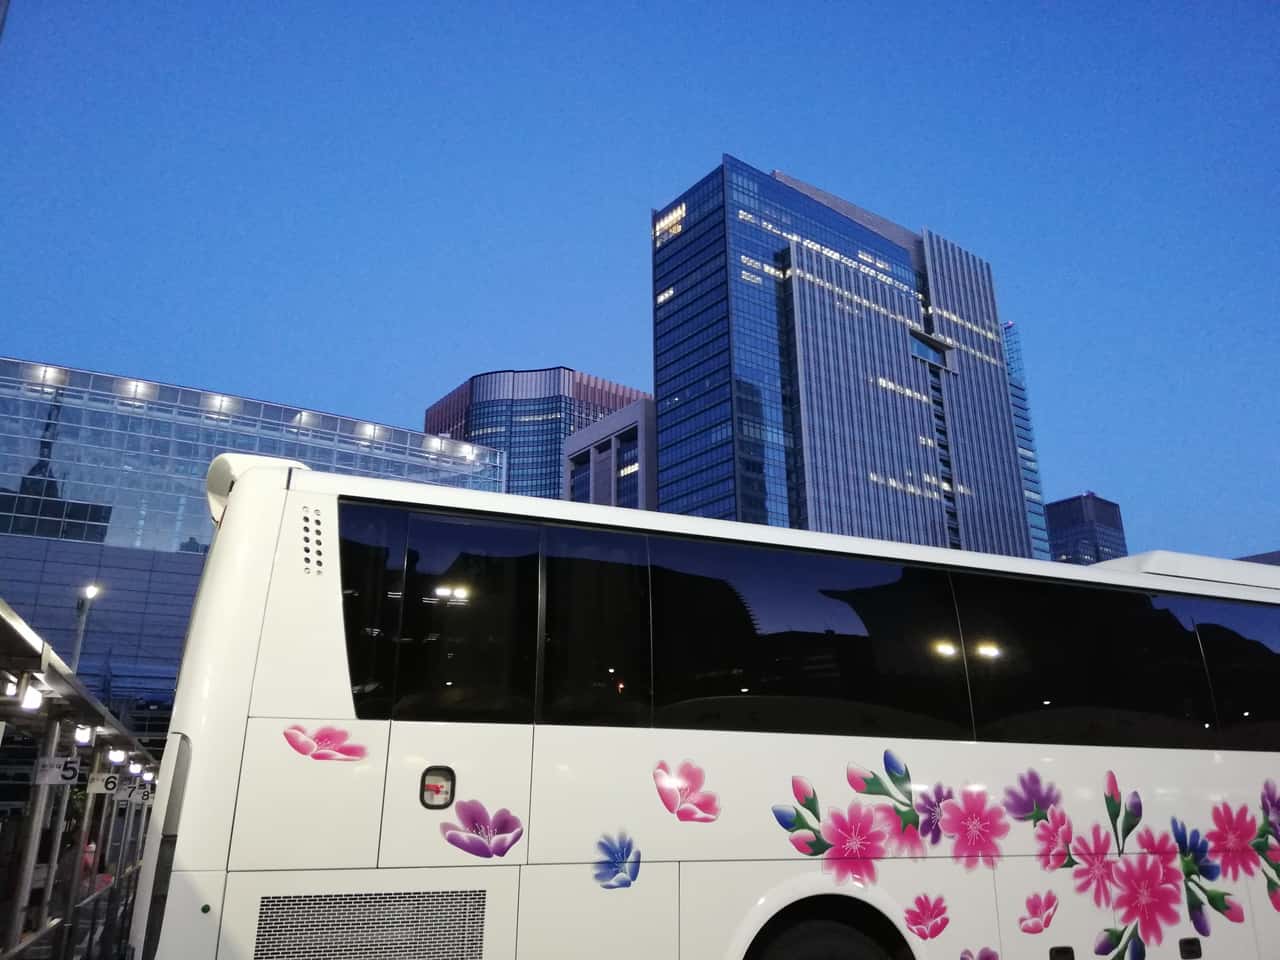 価格破壊 高速バス 東京 大阪間が1 500円の衝撃 実際に神戸 東京00円のバスに搭乗してみた Kamiu カミーユ